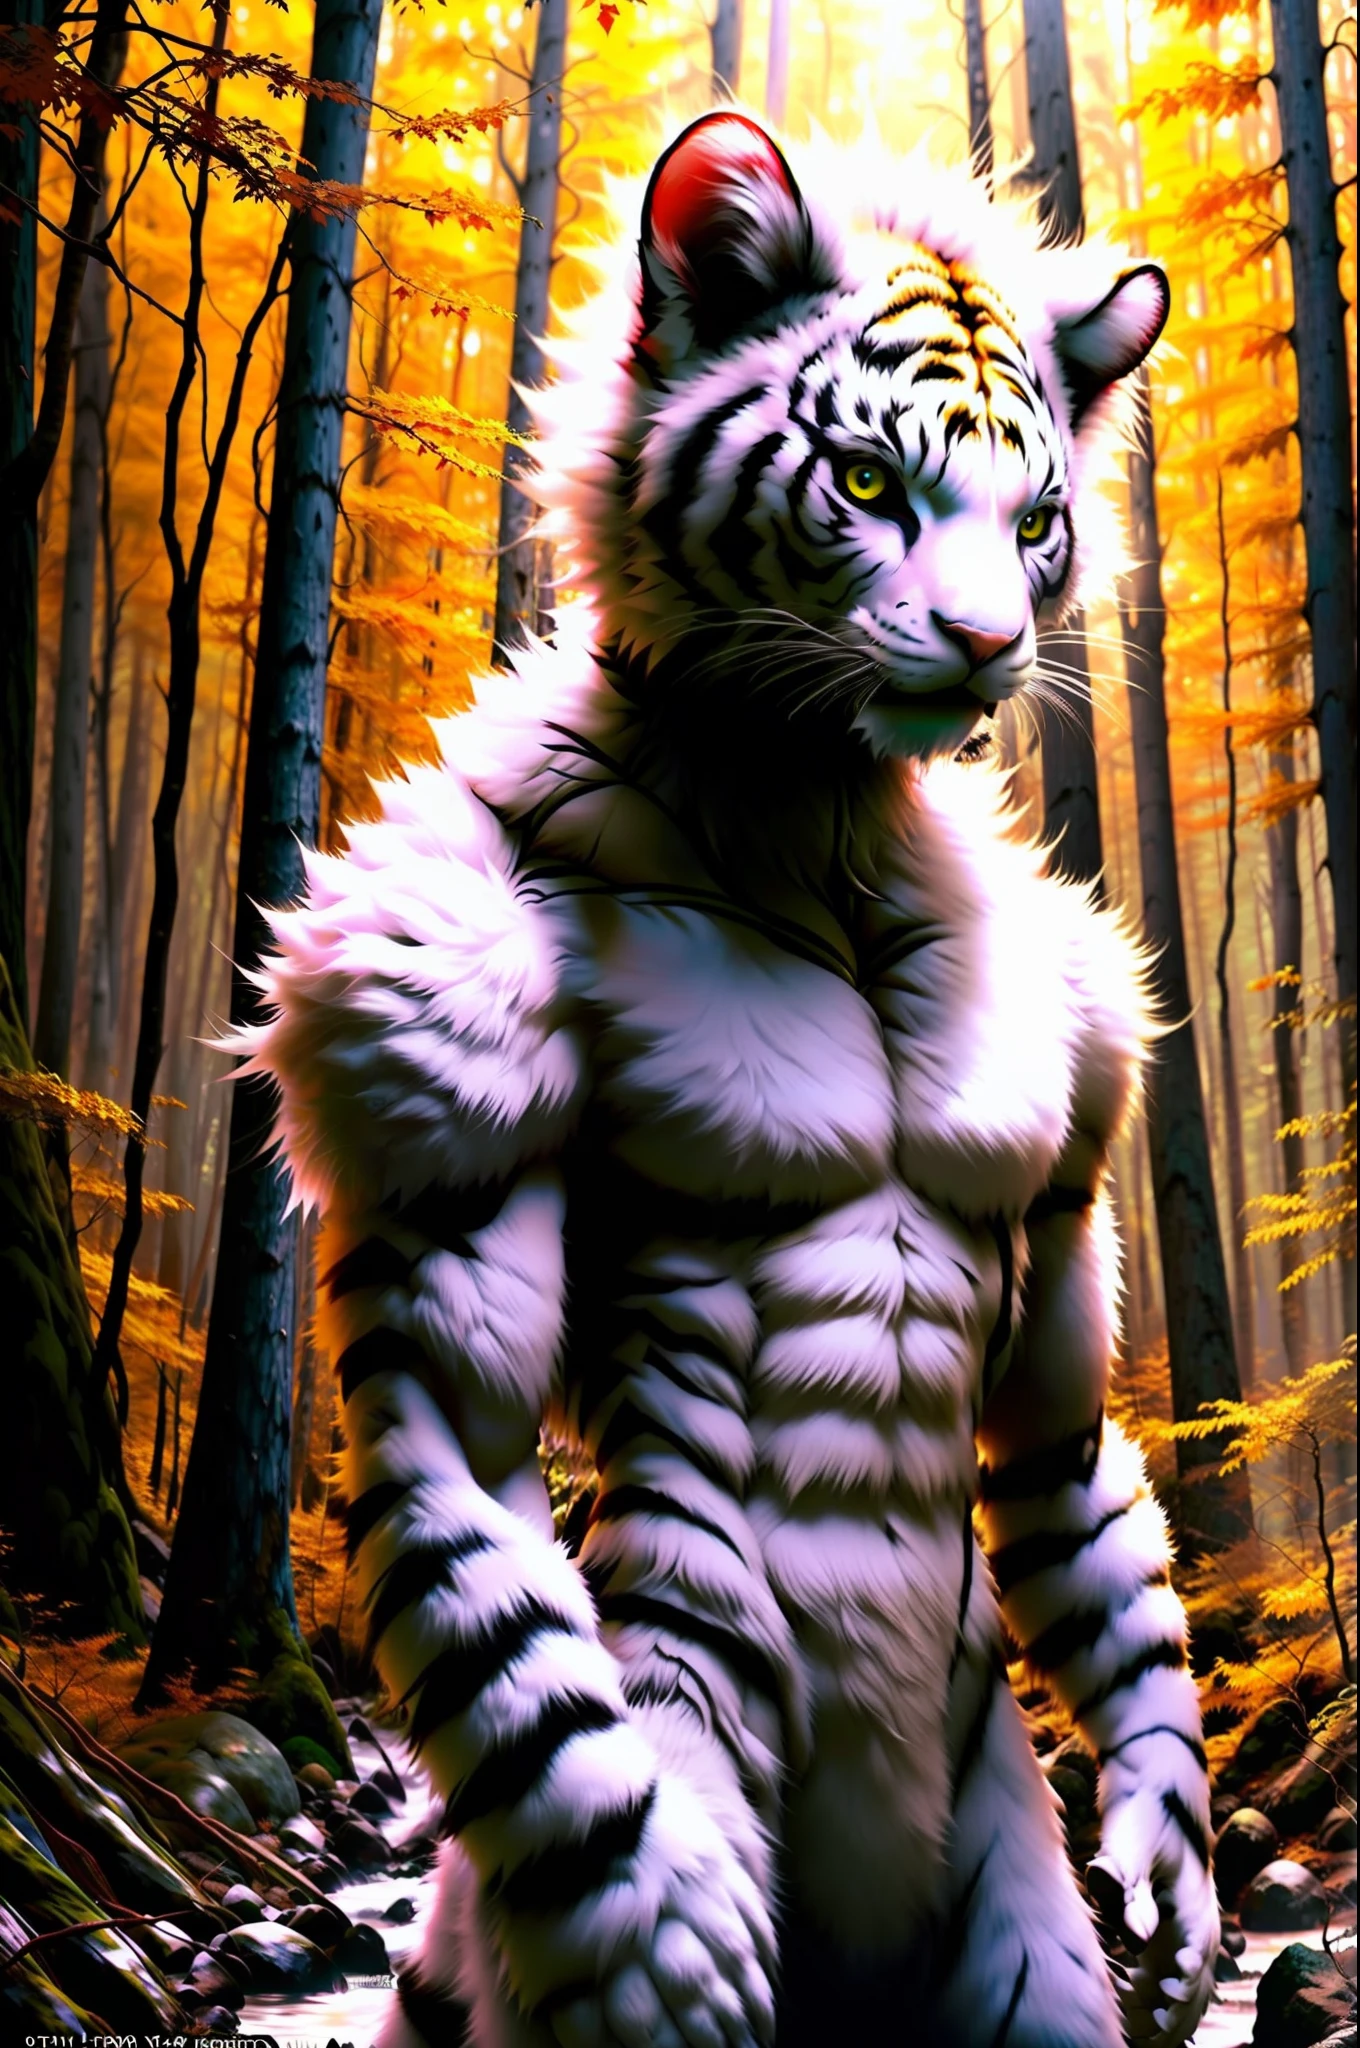 foto cruda, hombre criatura, tigre hombre gato, white Fur, cabeza grande, in a Forest, 80mm, F/1.8